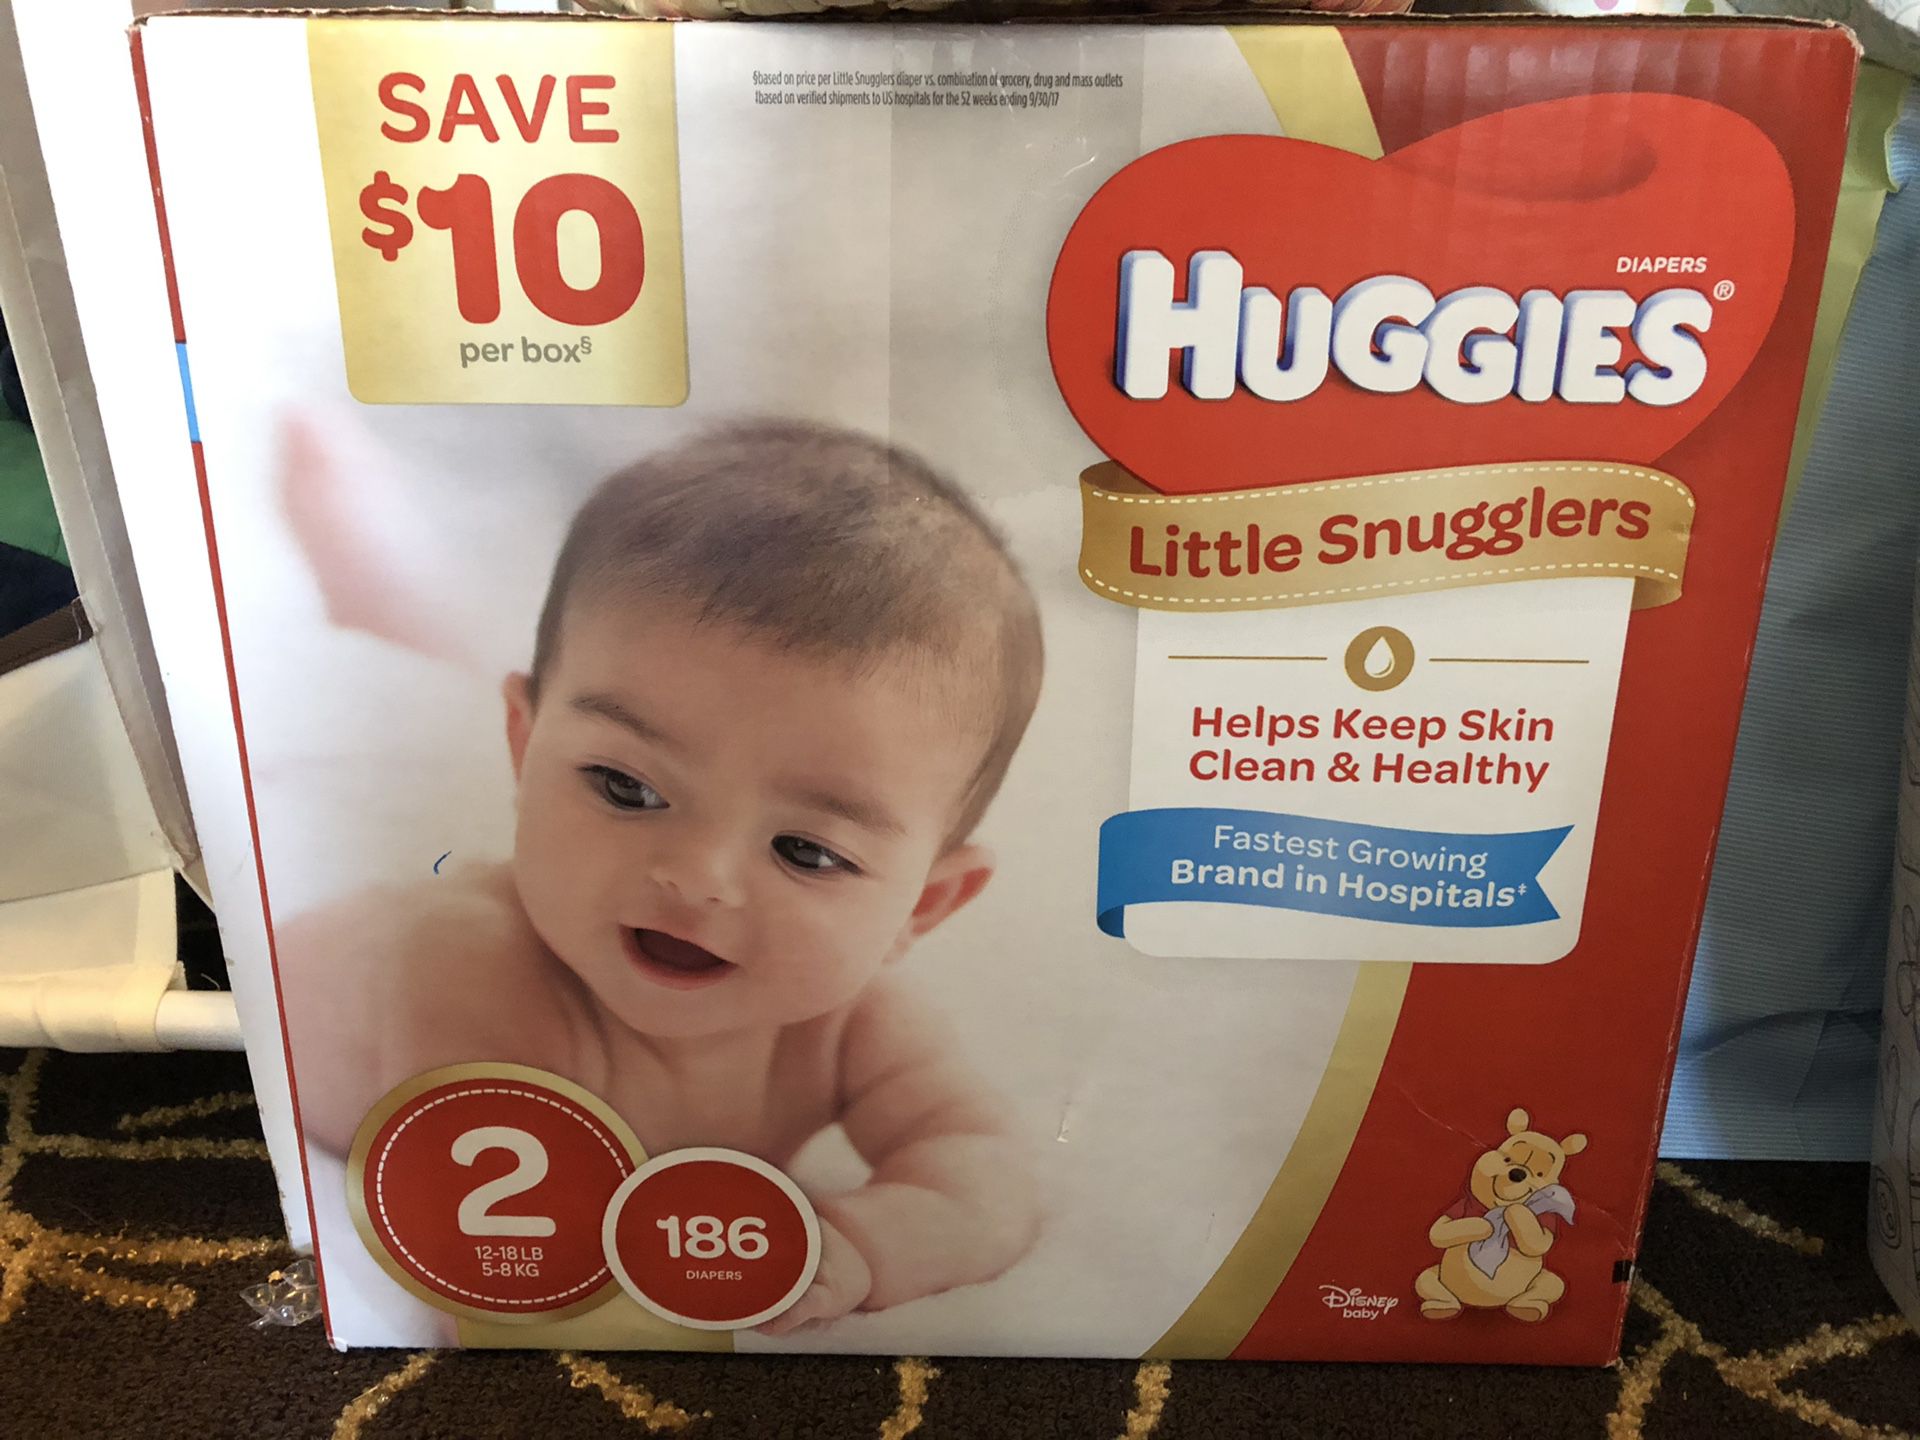 Huggins diapers